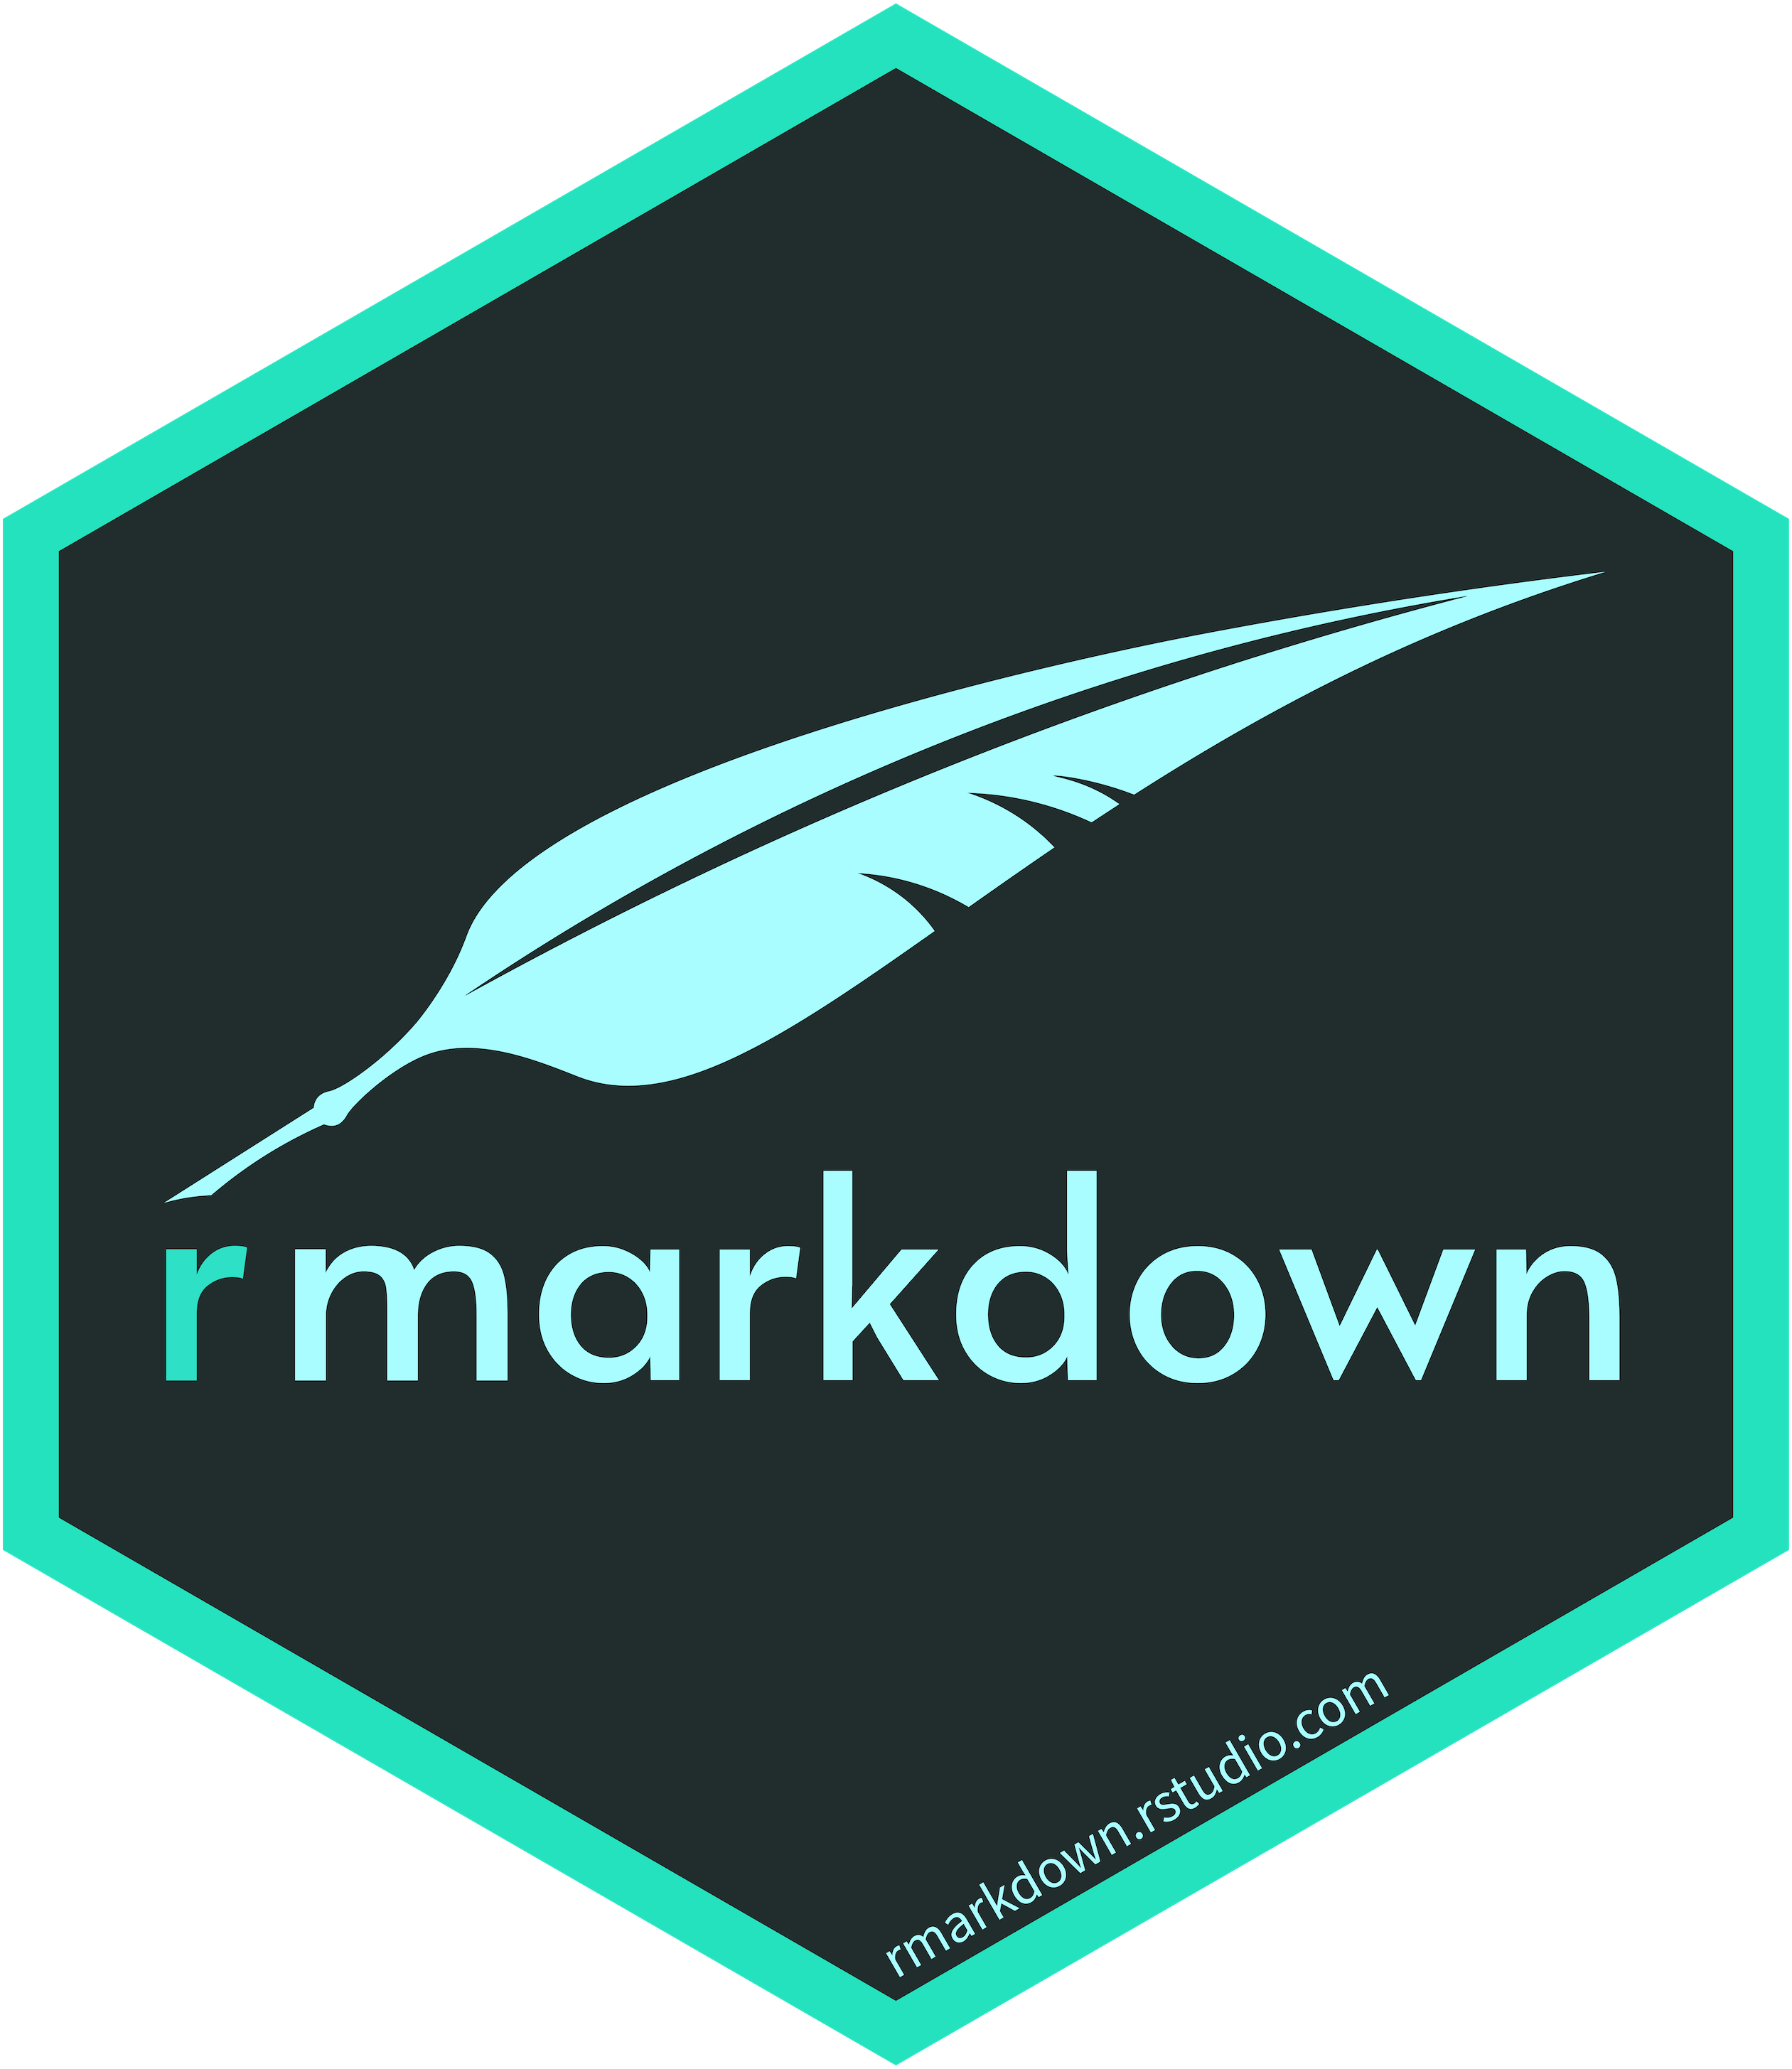 rmarkdown